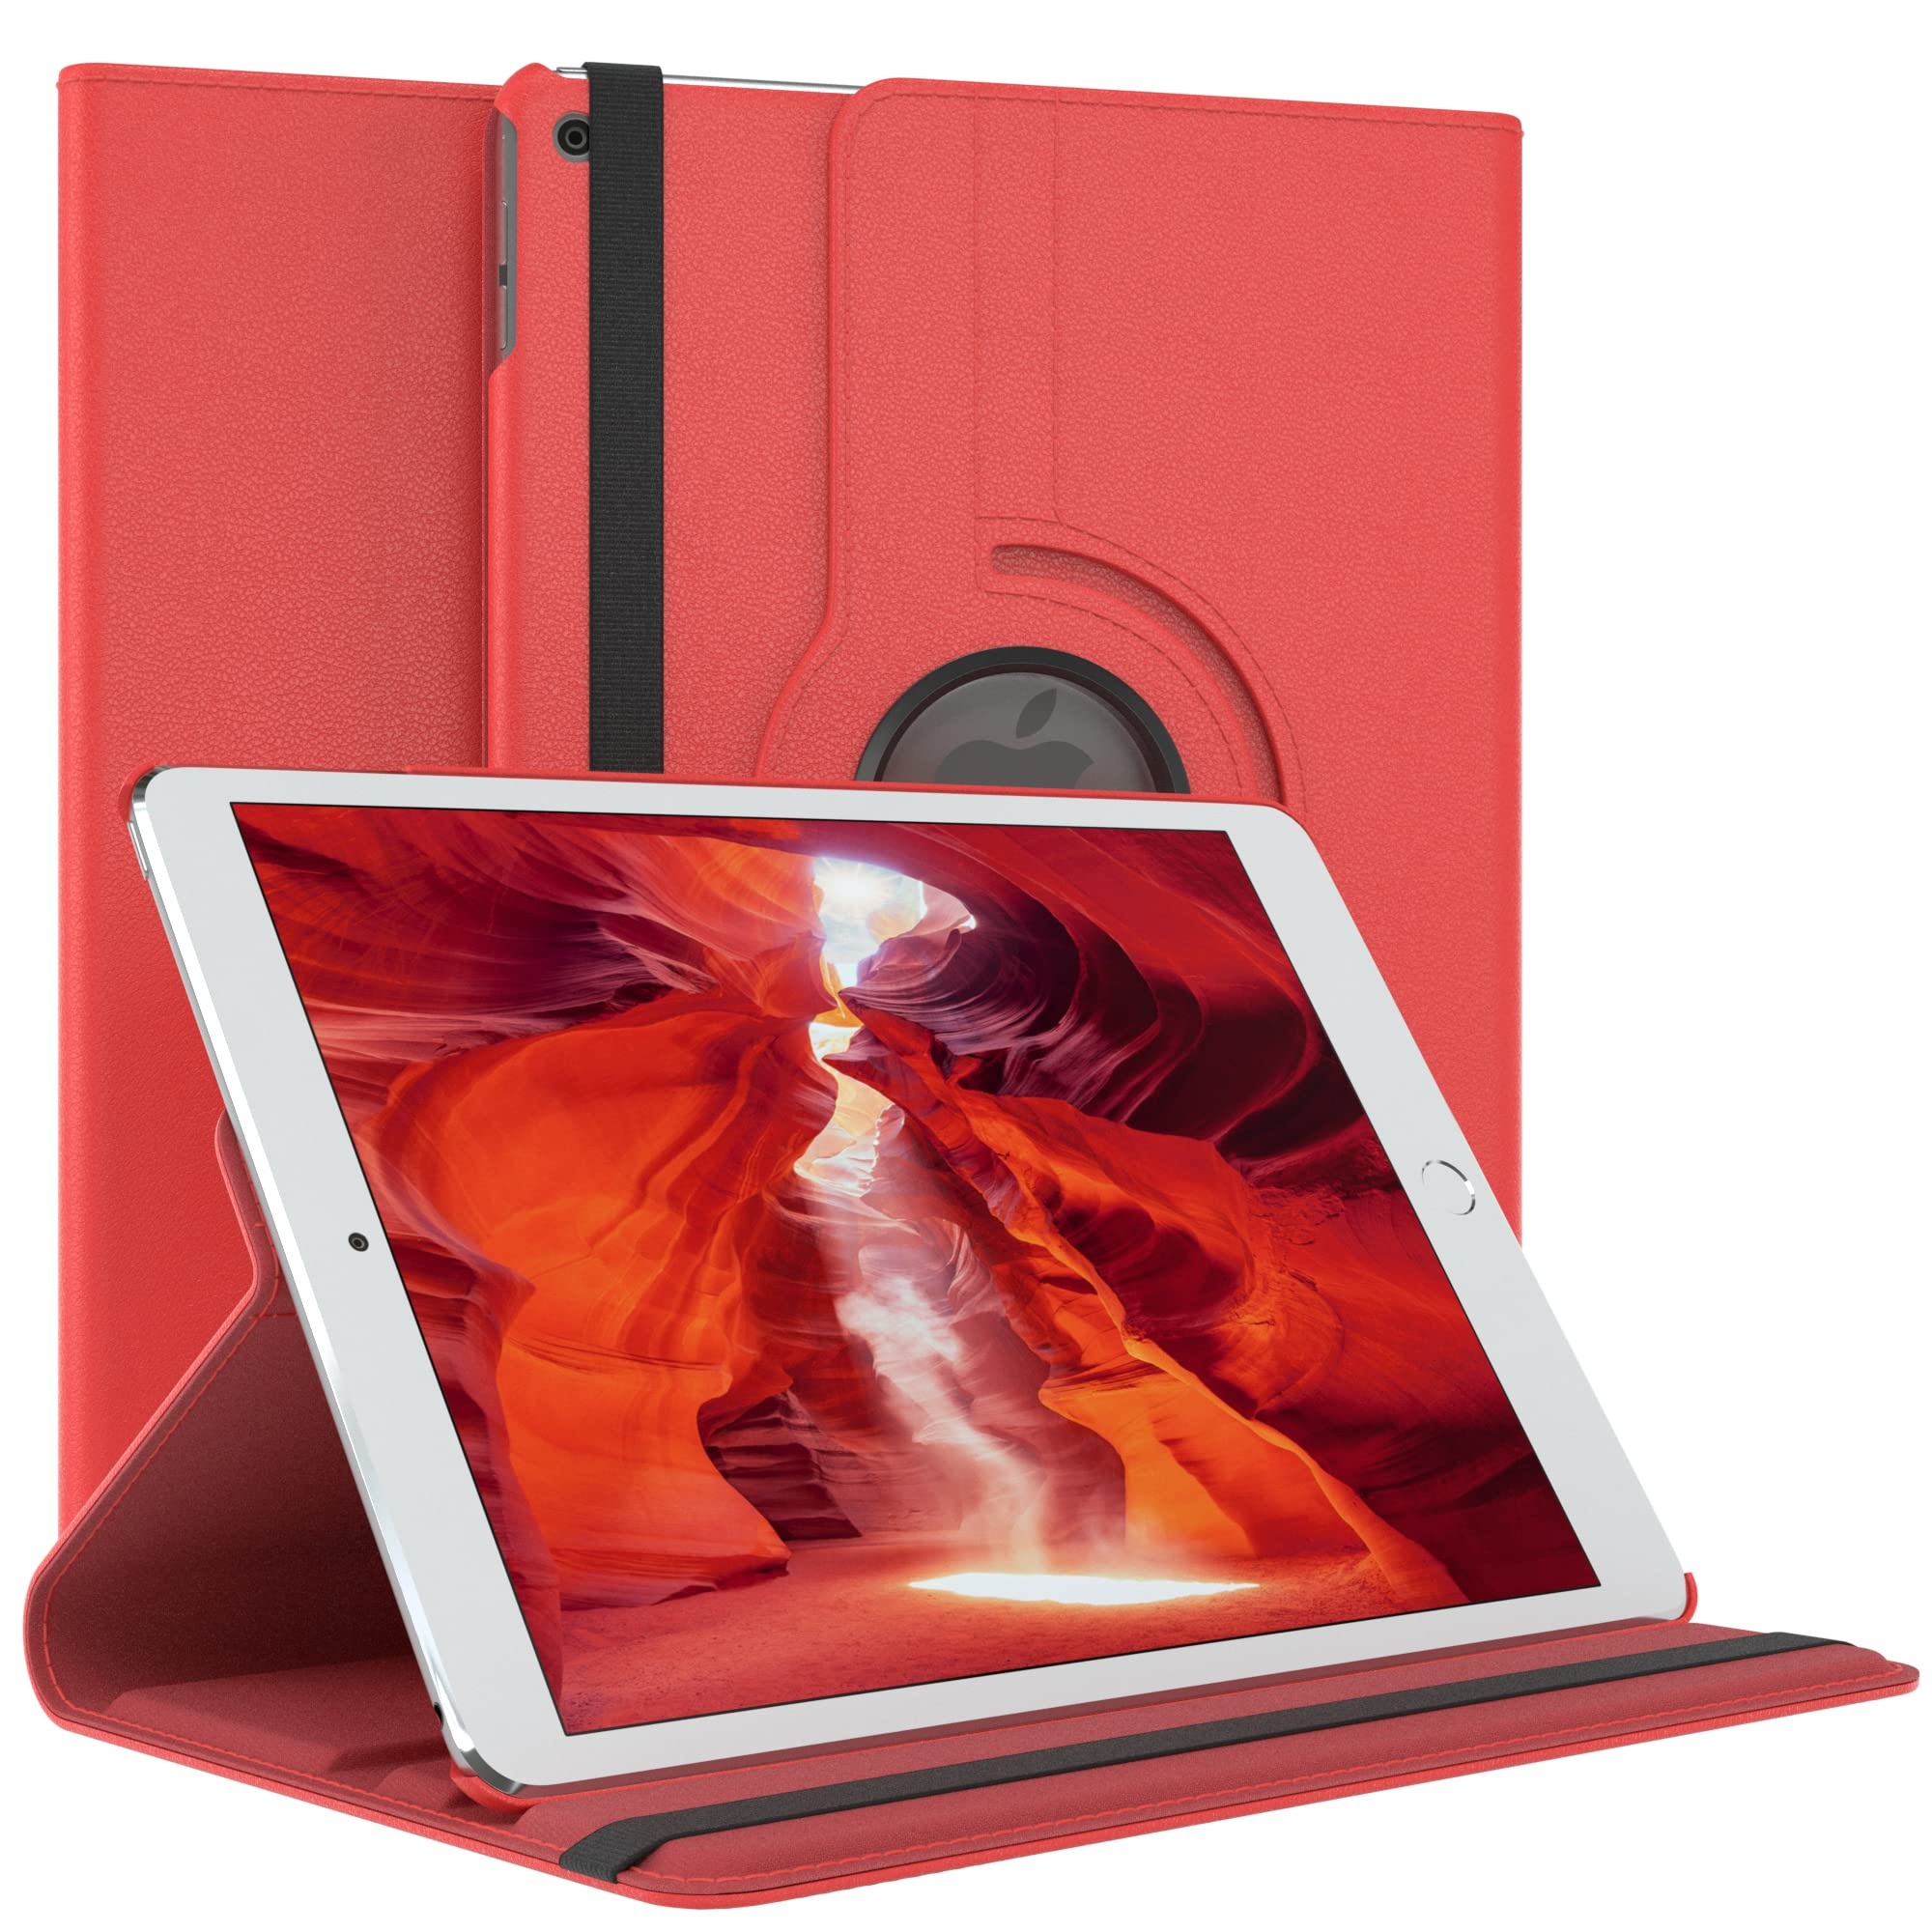 EAZY CASE - Tablet Hülle für iPad 2017 iPad 2018 (5./6. Gen.) Schutzhülle 9.7 Zoll Smart Cover Tablet Case Rotationcase zum Aufstellen Klapphülle 360° drehbar mit Standfunktion Tasche Kunstleder Rot